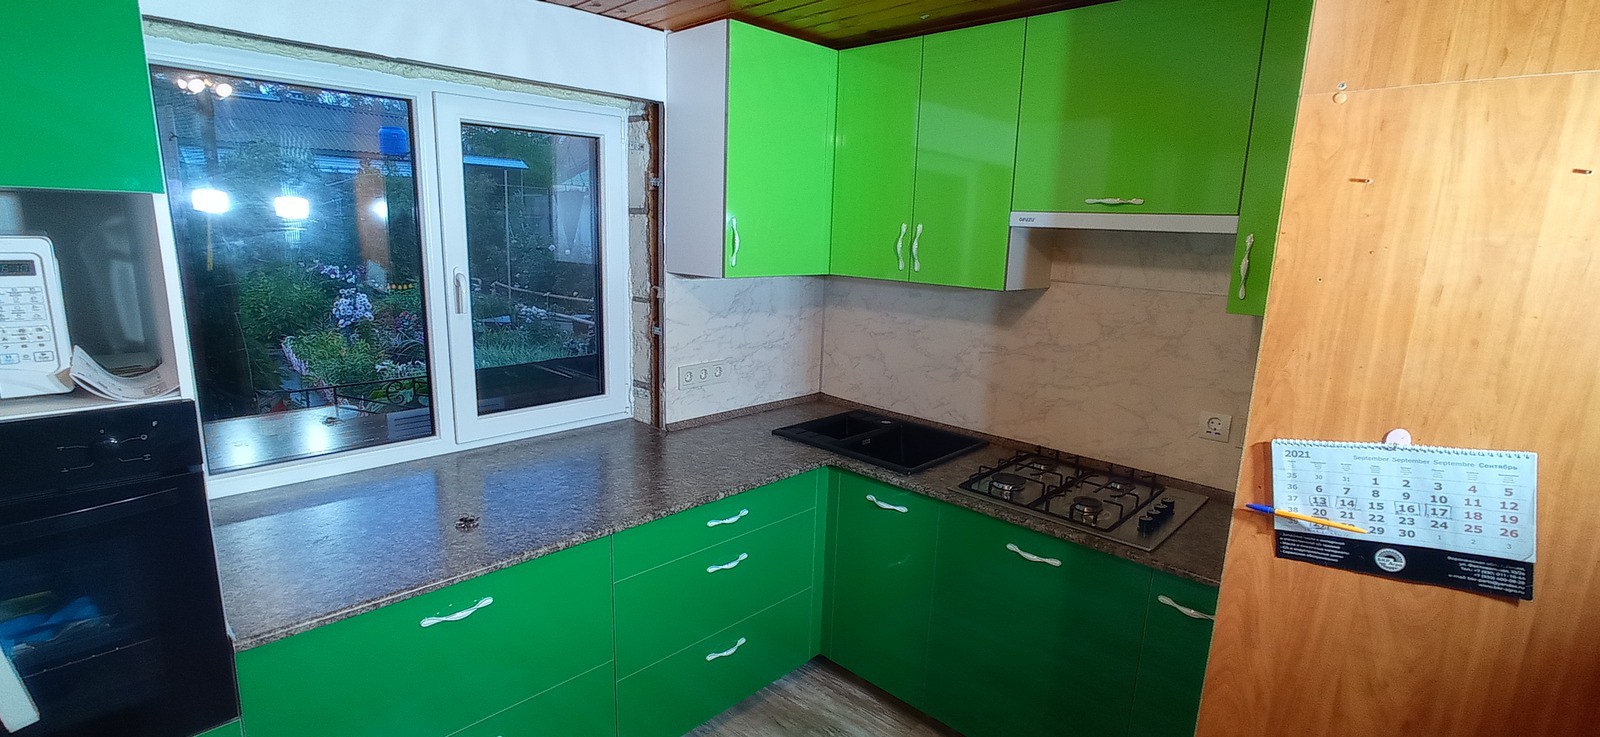 Кухонная мебель с зелеными фасадами